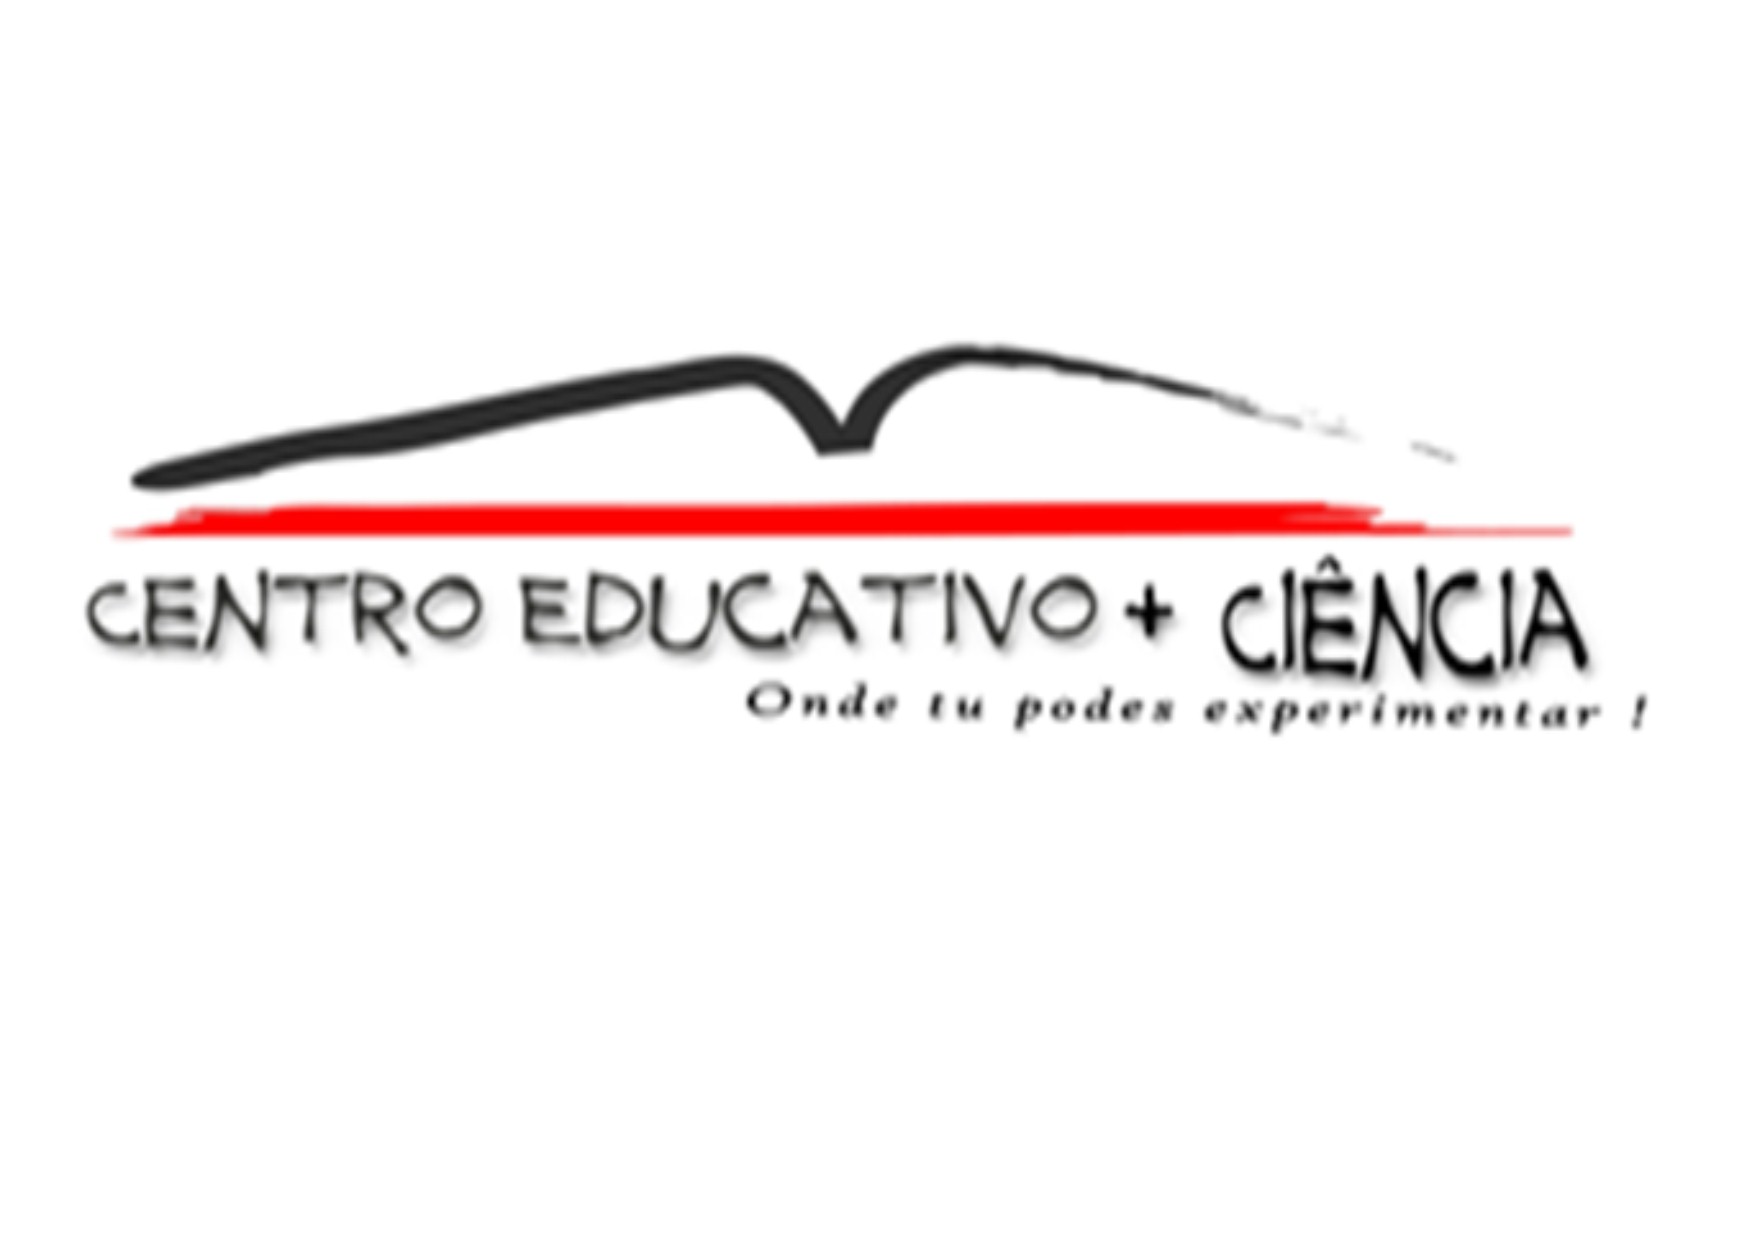 Centro Educativo + Ciência